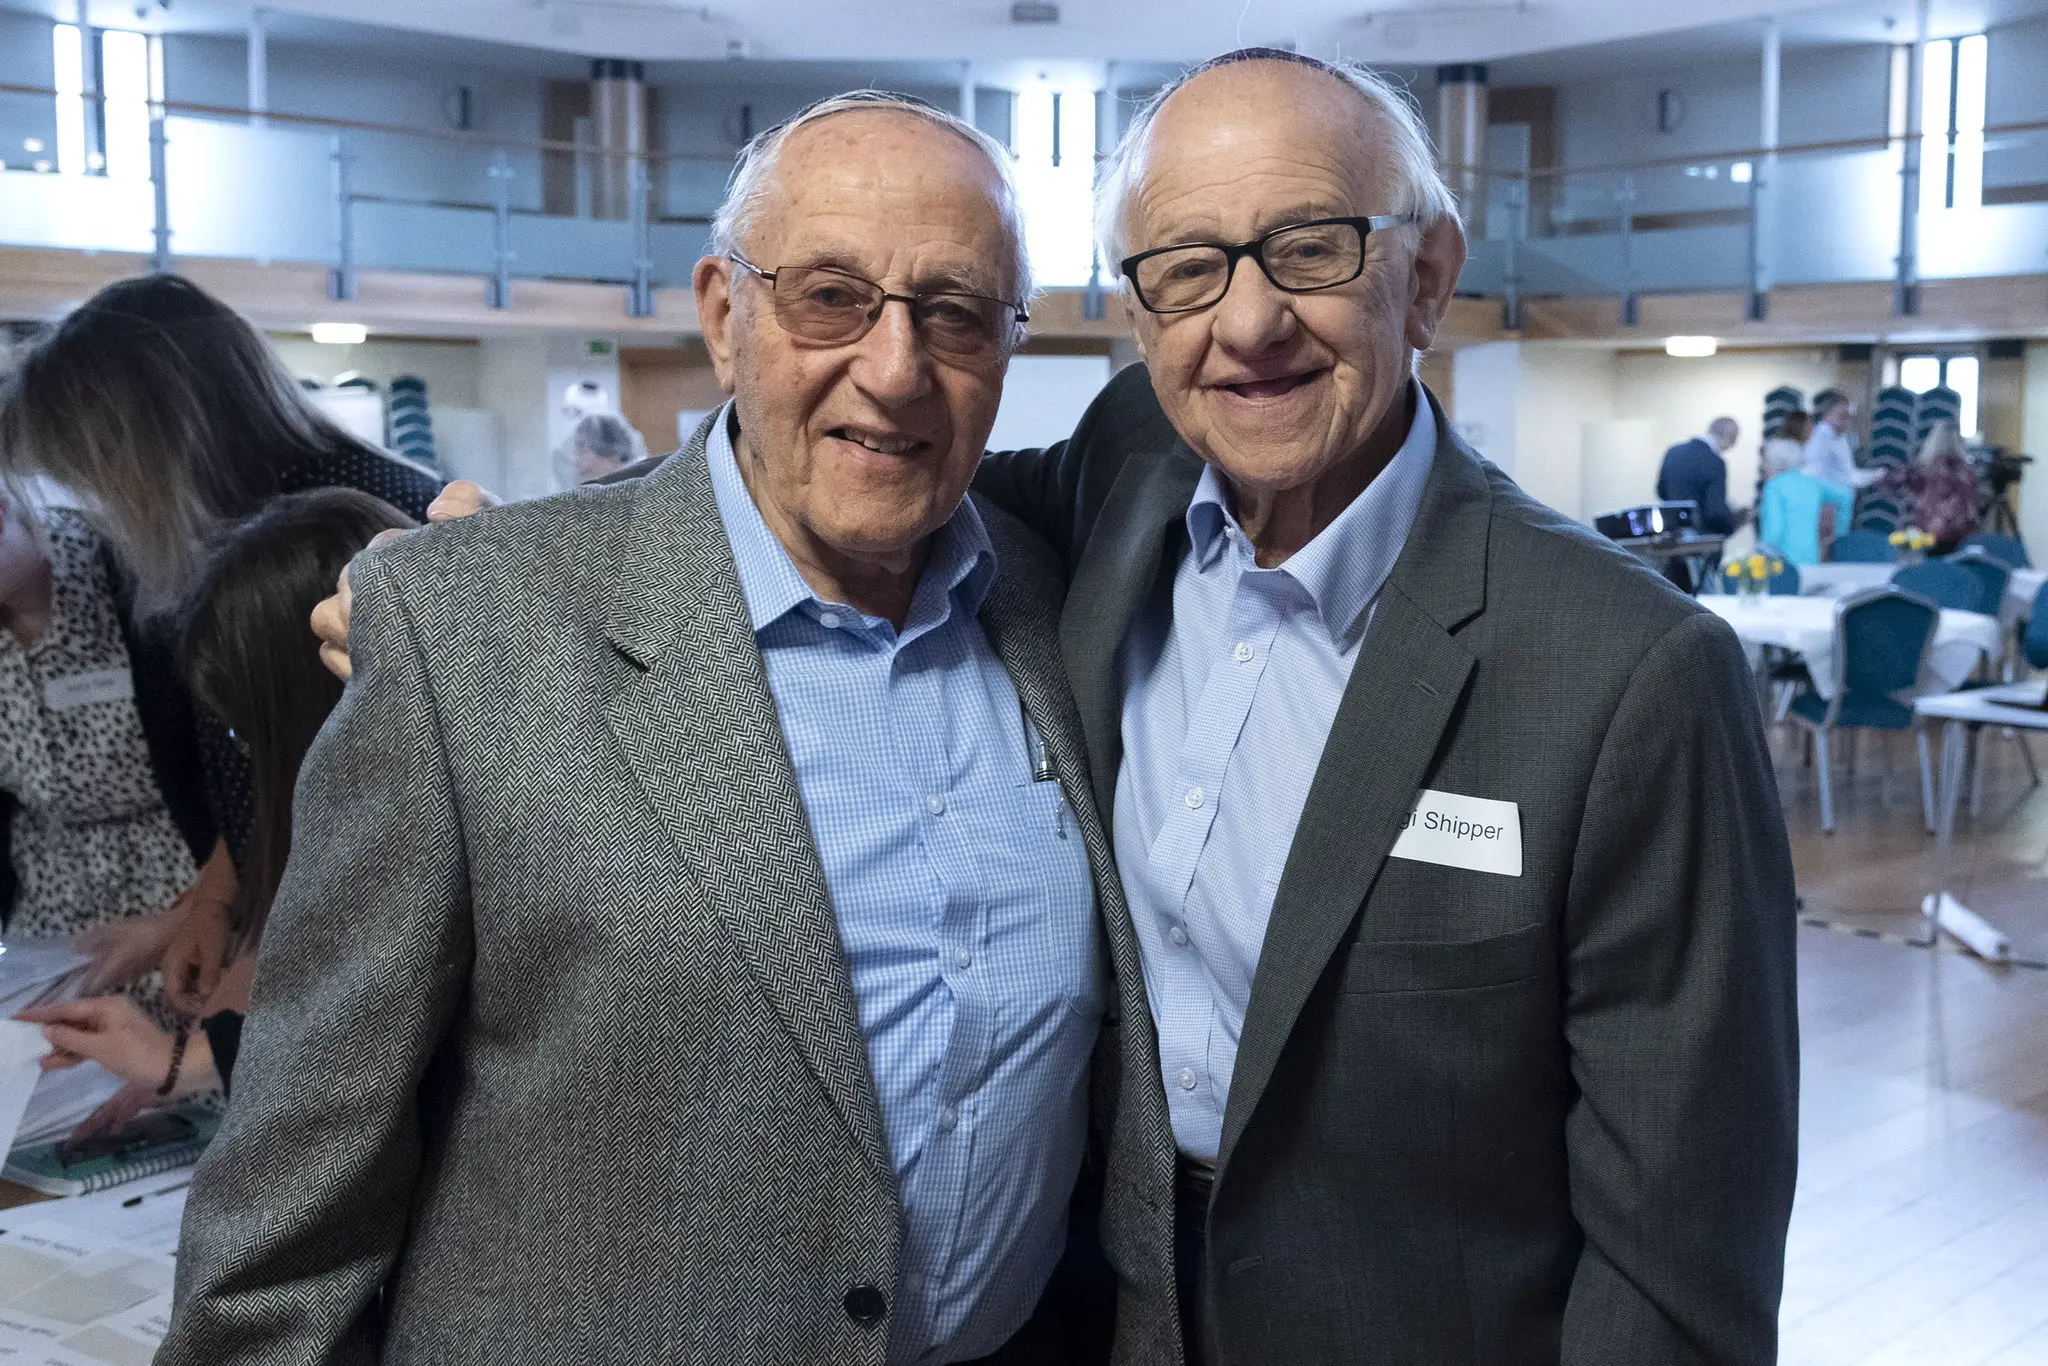 Holocaust Survivors Zigi Shipper and Manfred Goldberg during a Holocaust Memorial event